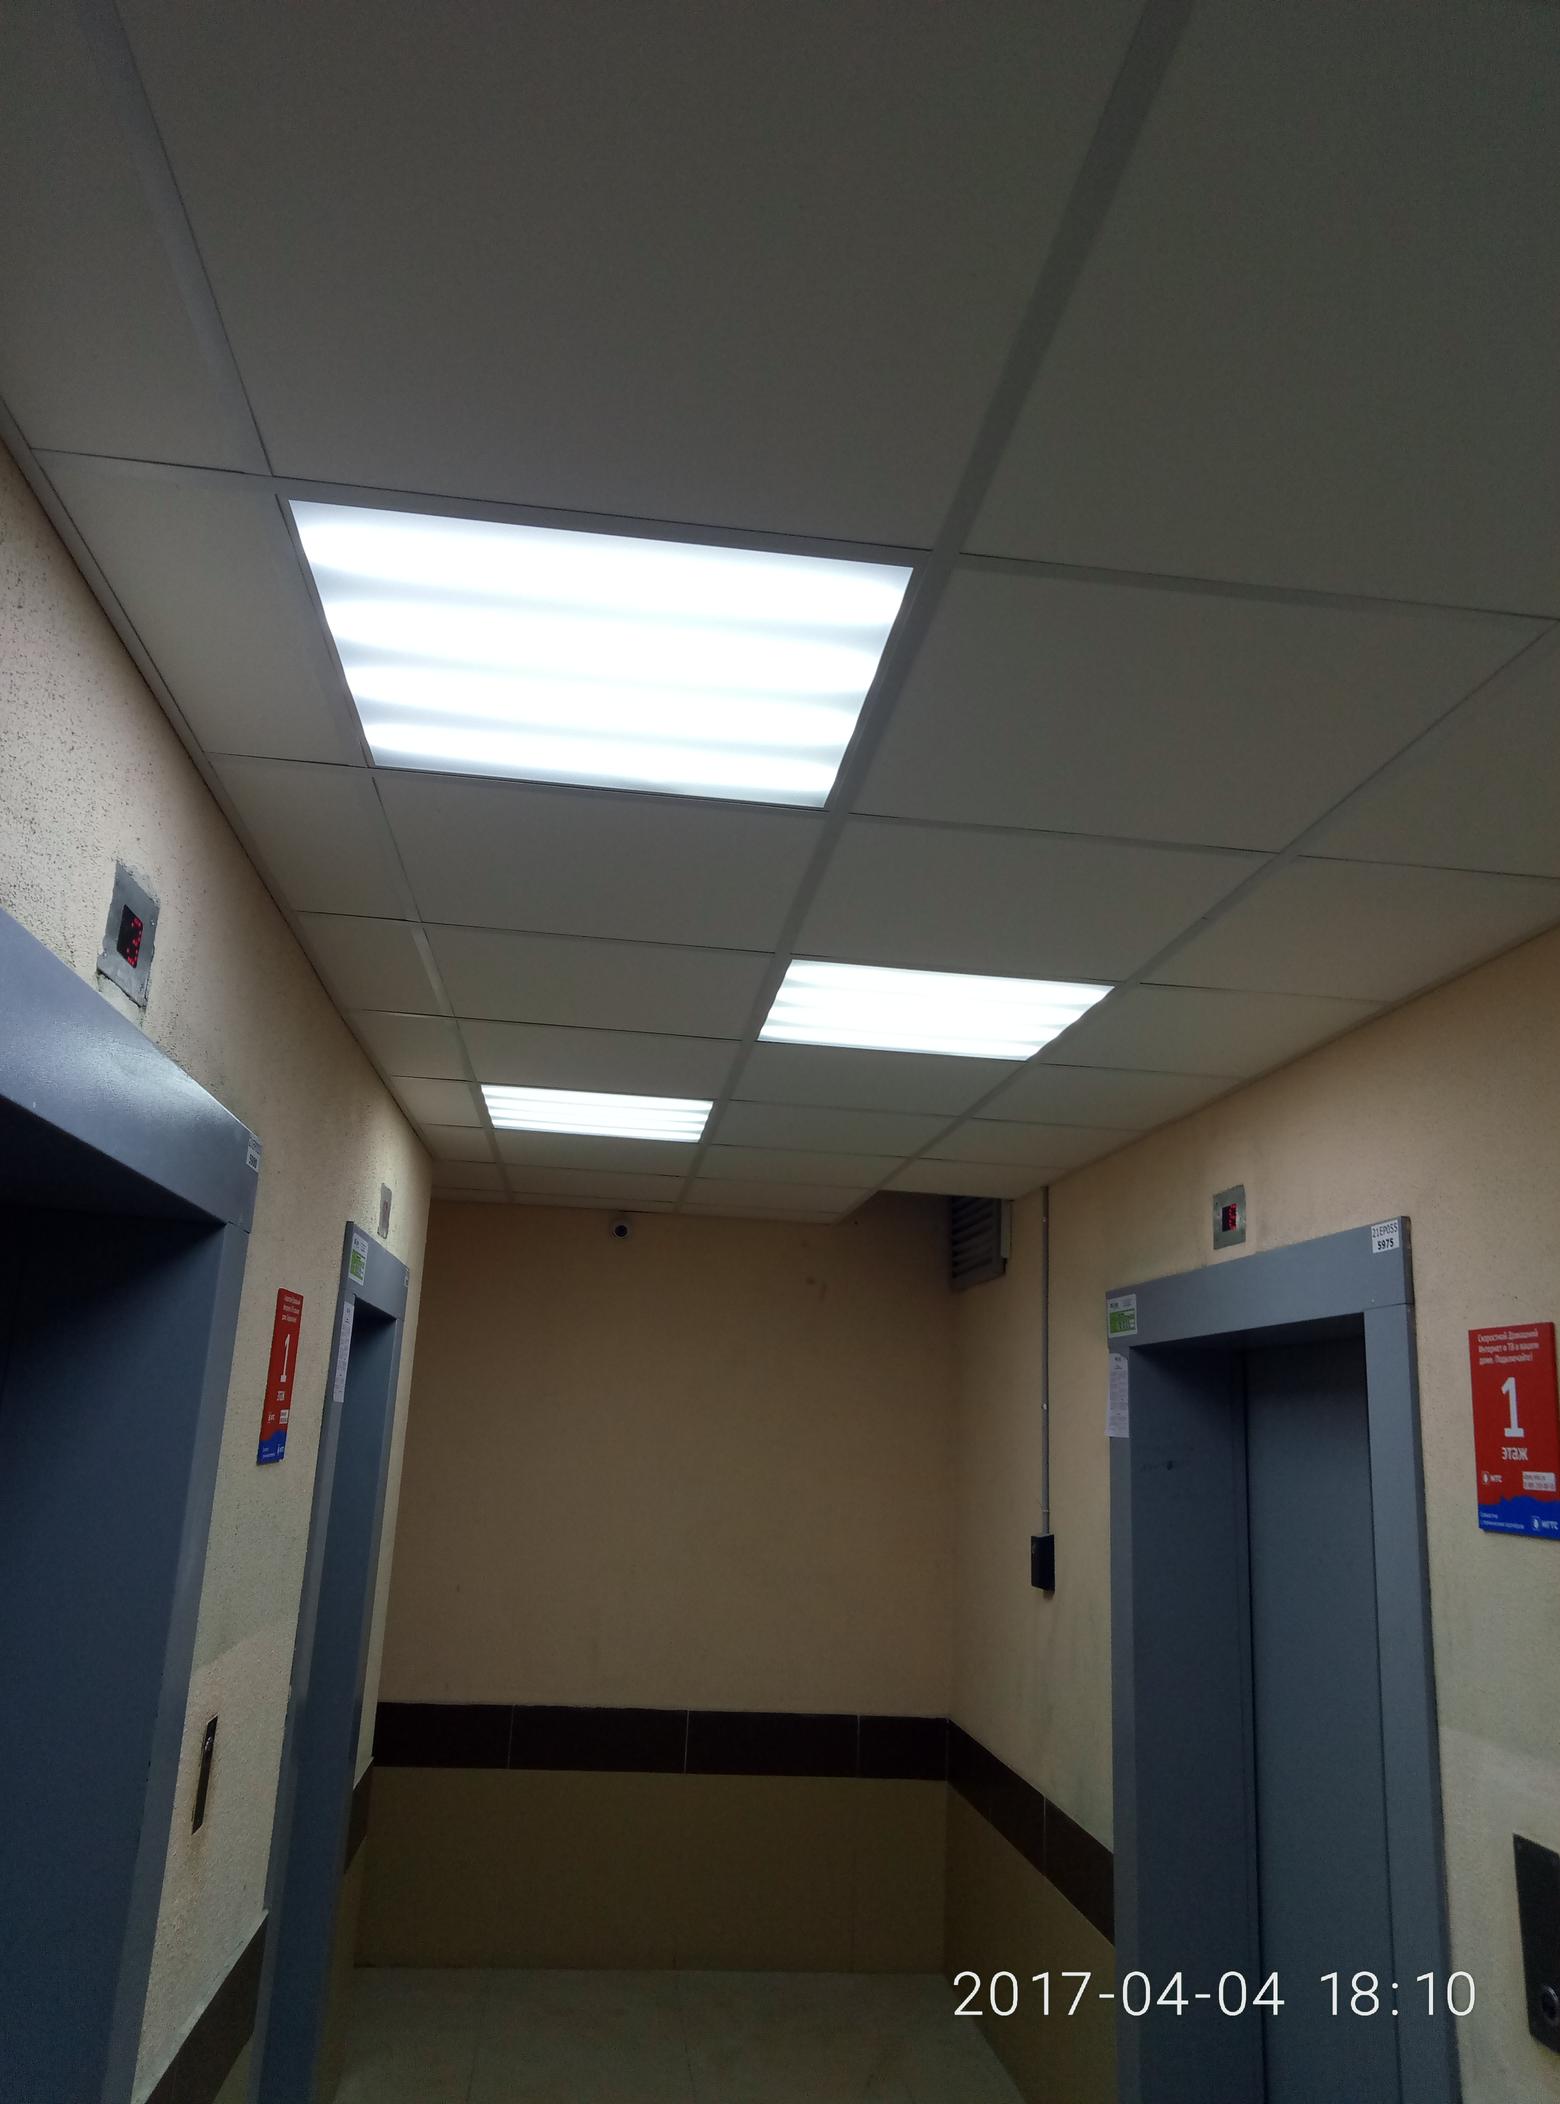 зона ожидания лифтов с новым потолком и светильниками